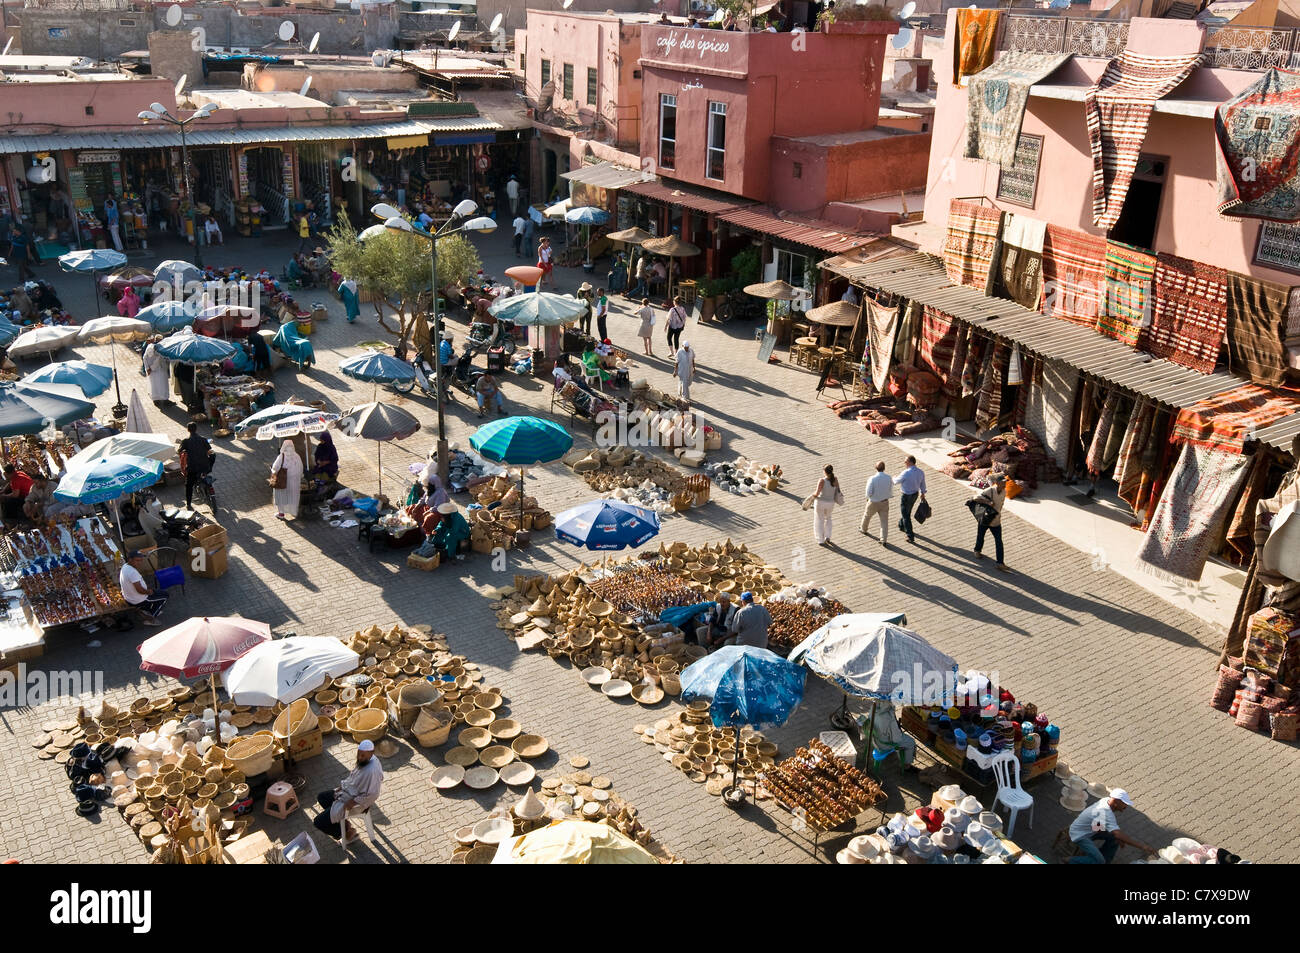 Un marché à Marrakech, Maroc Banque D'Images